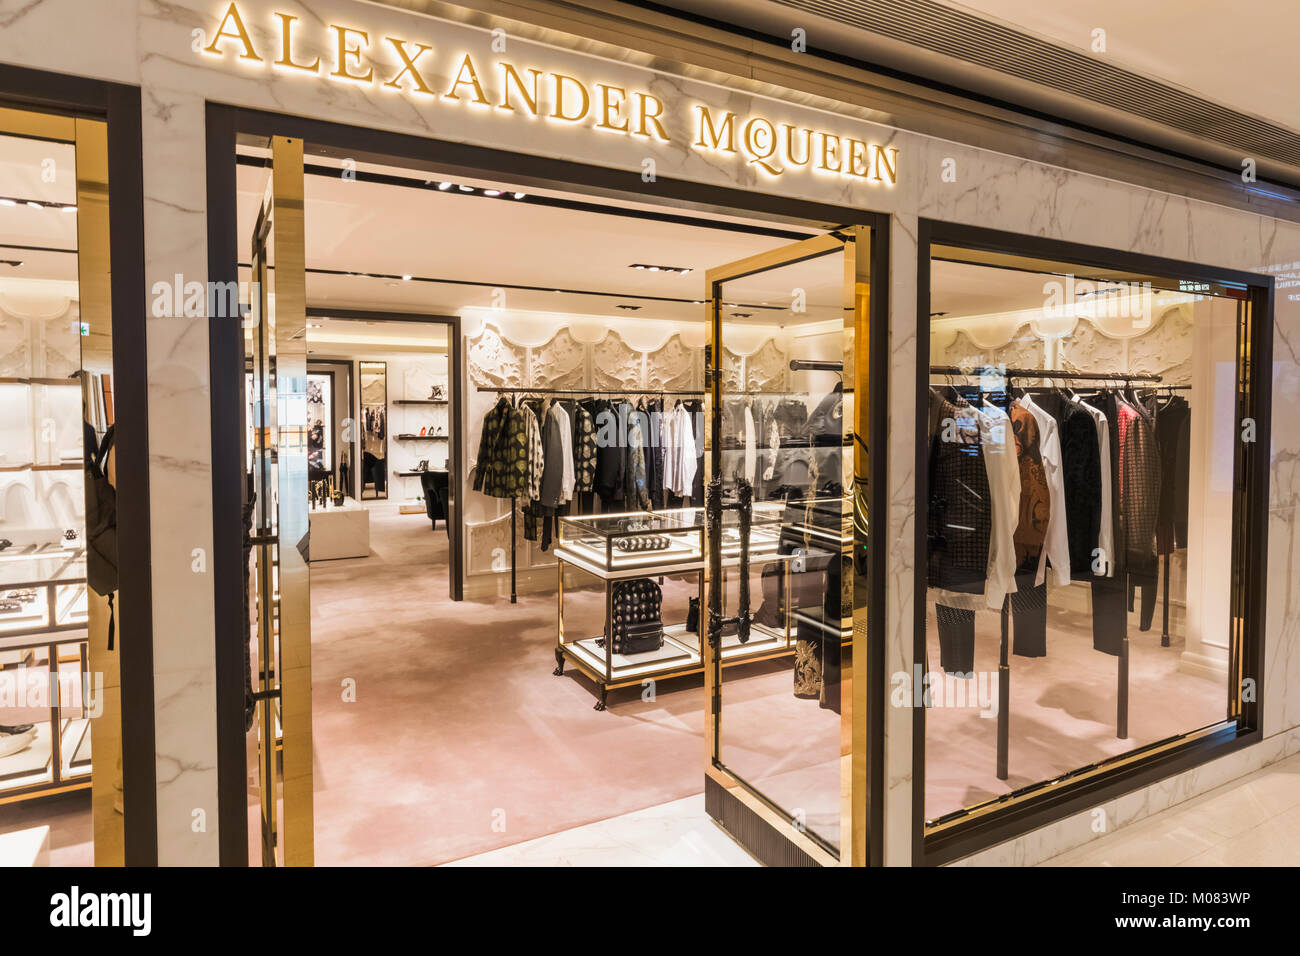 Alexander McQueen Store Stock Photo 